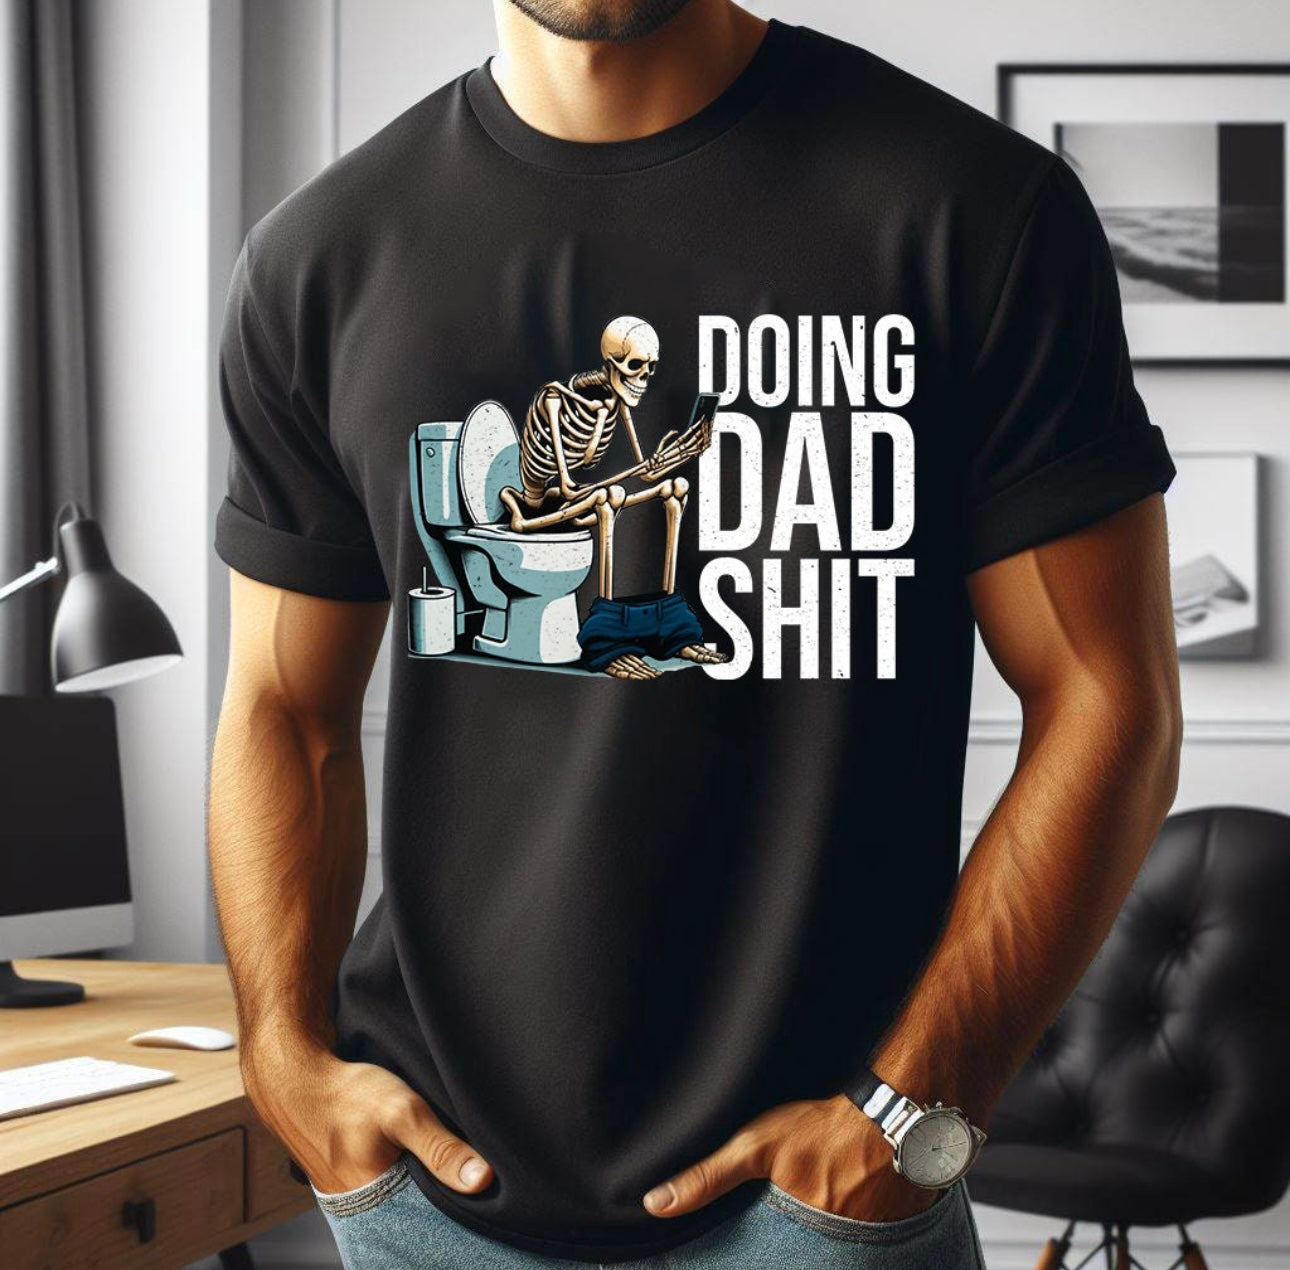 Doing dad shit